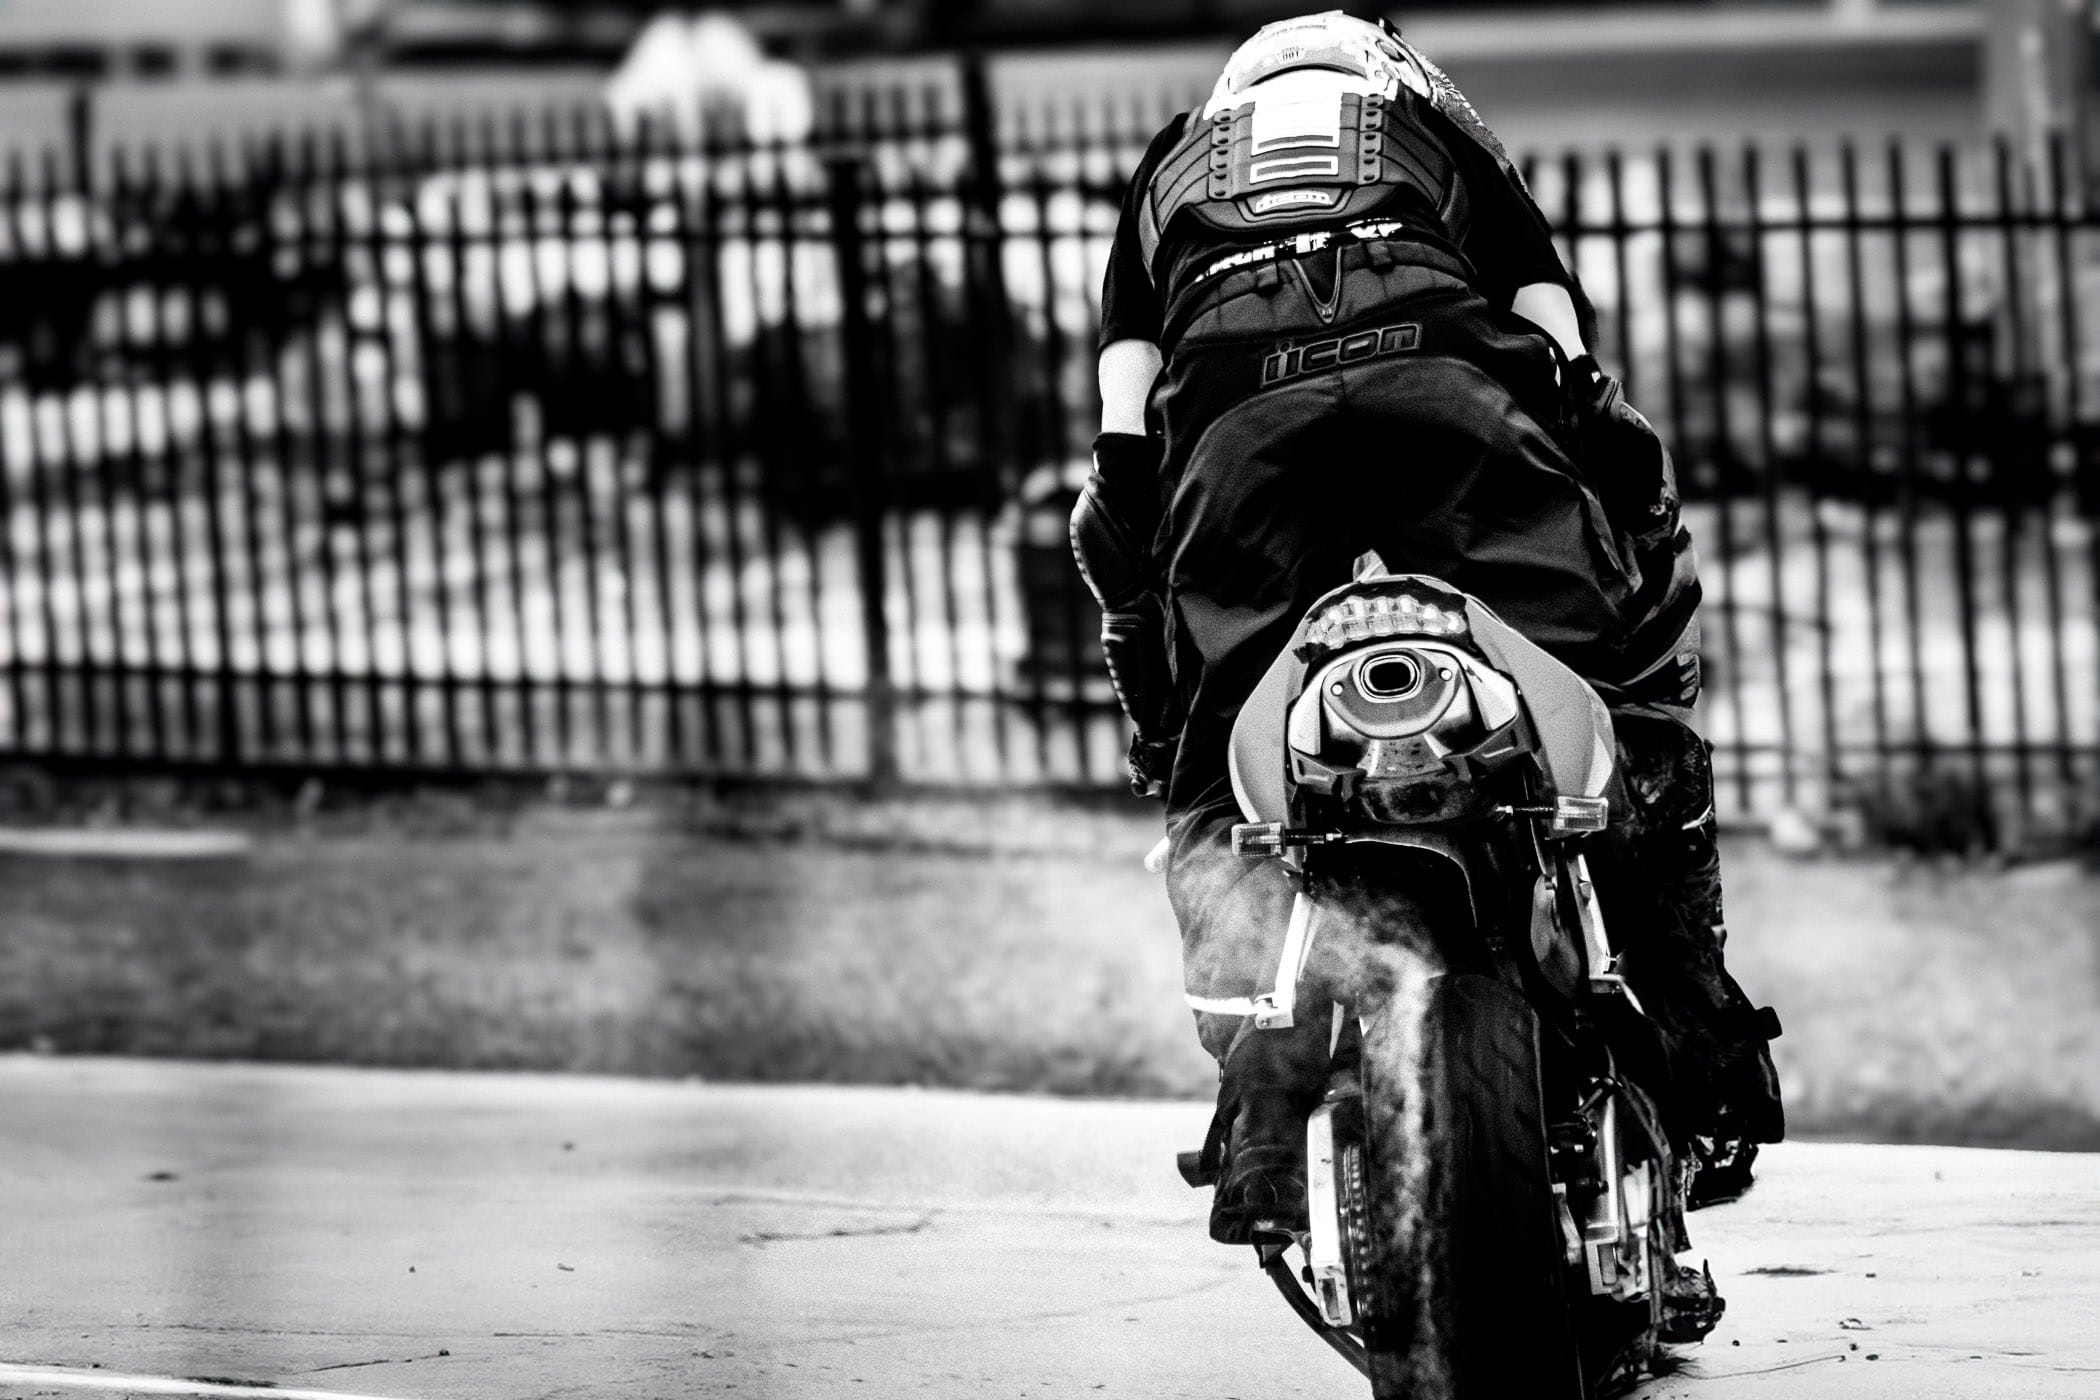 A stunt rider shows off at Honda Suzuki North in Dallas.